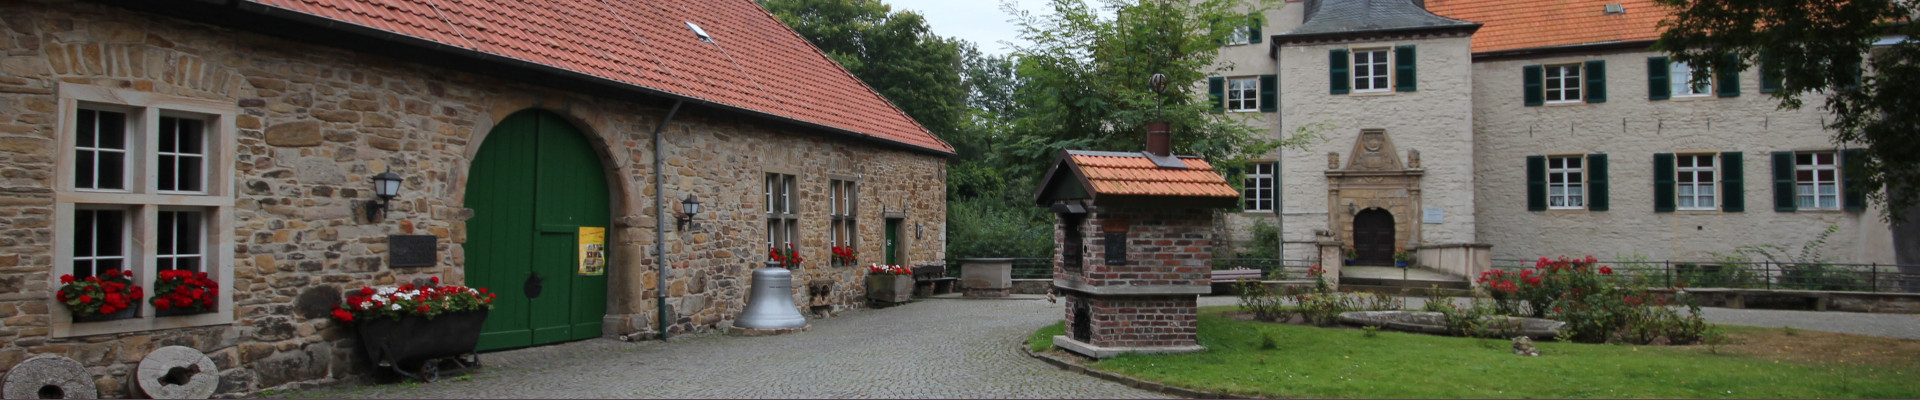 Heimatmuseum Luedgendortmund